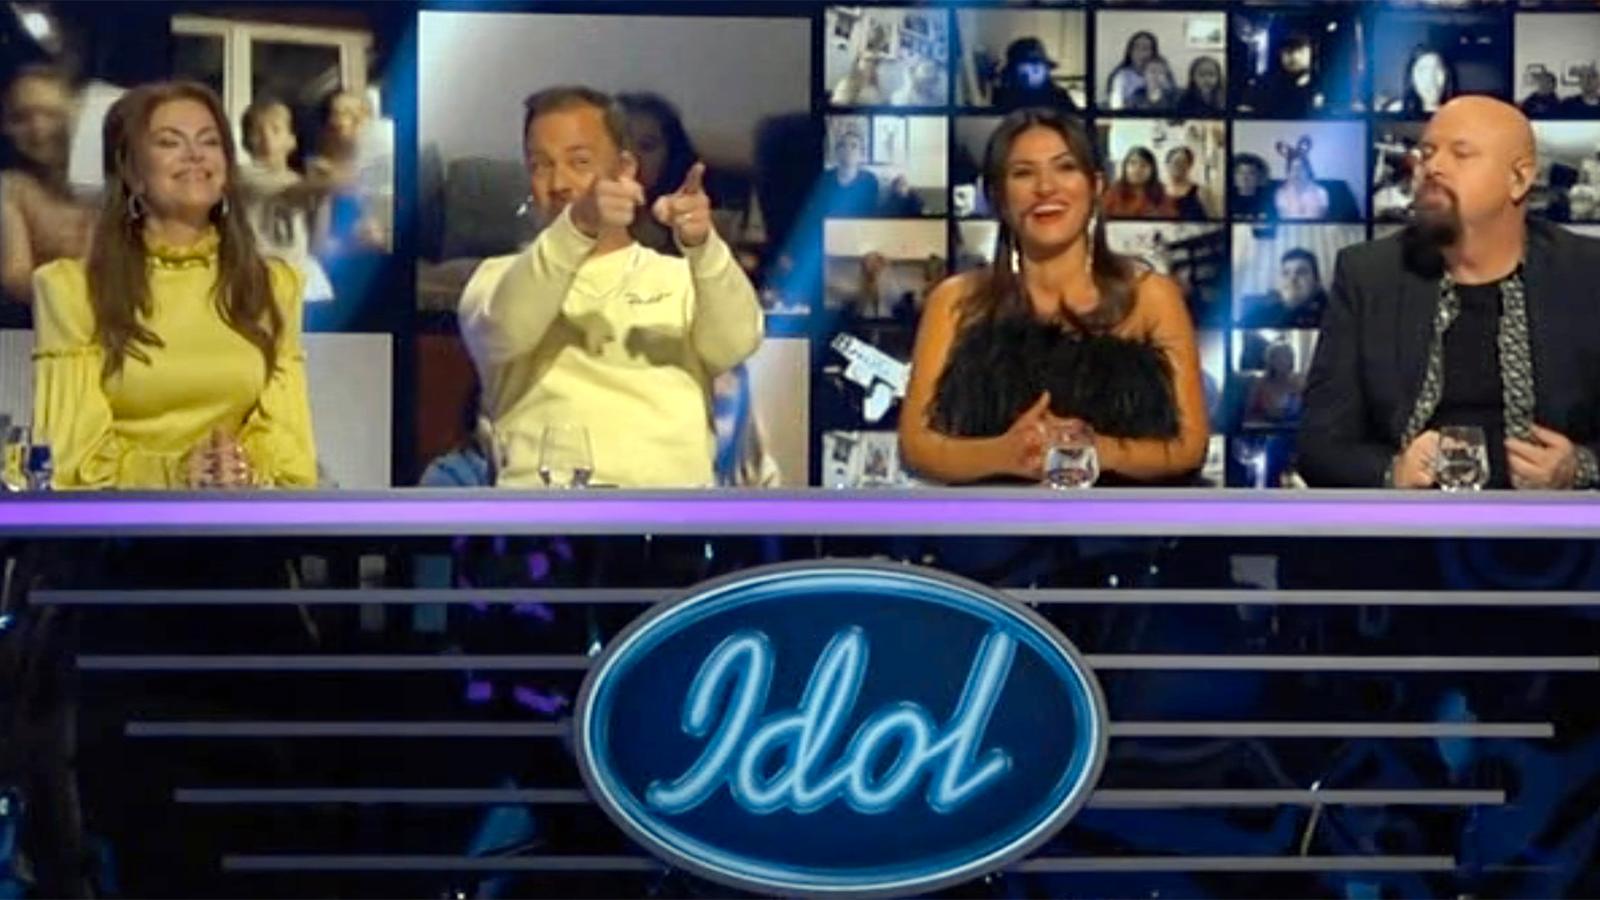 Bara glada miner i ”Idol”-juryn för det mesta som bjöds.